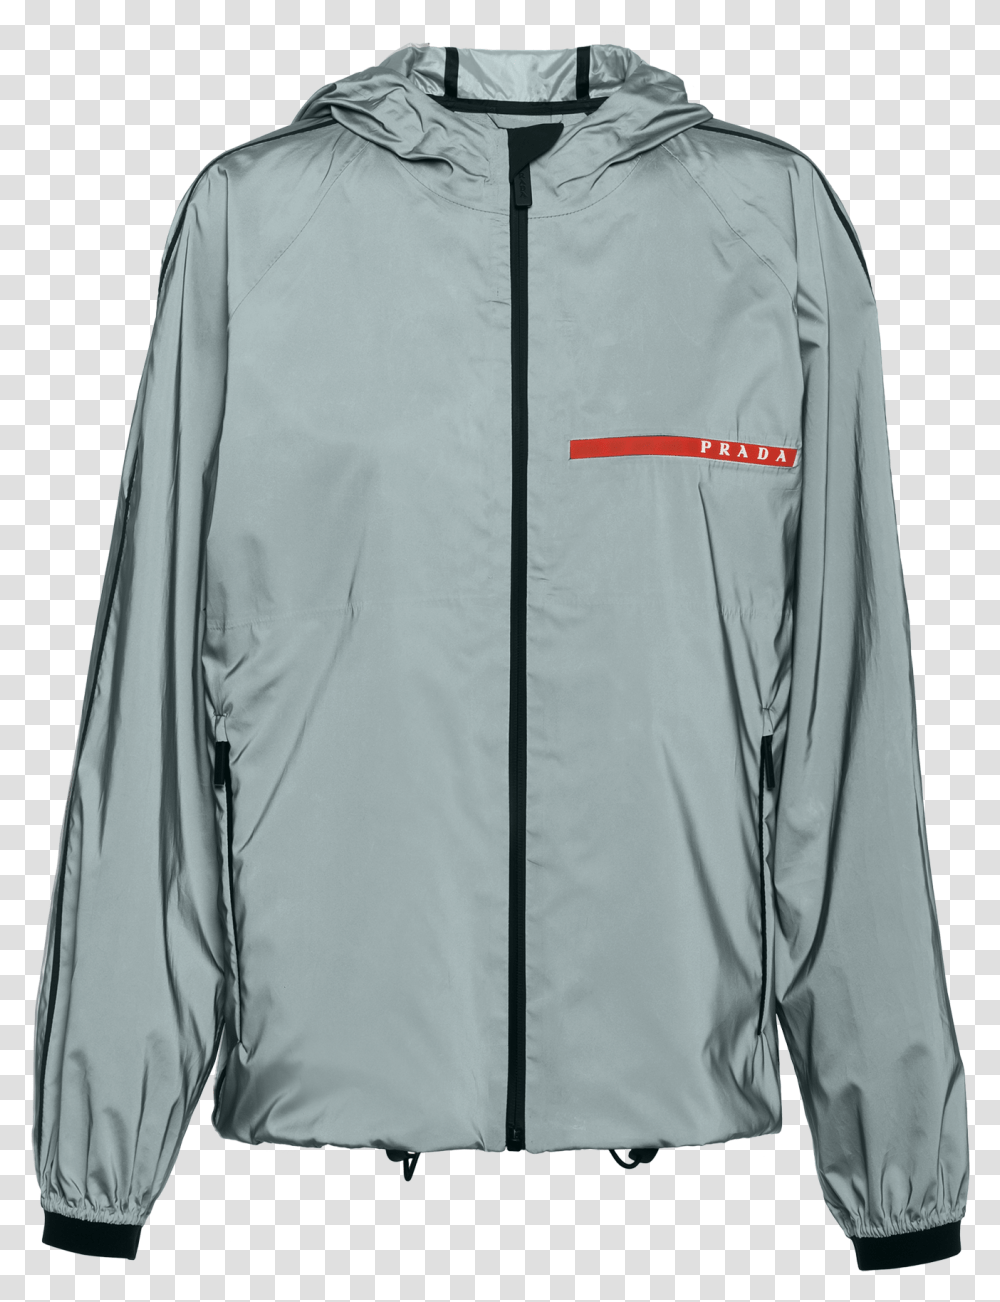 Prada Reflective Jacket, Apparel, Coat, Raincoat Transparent Png